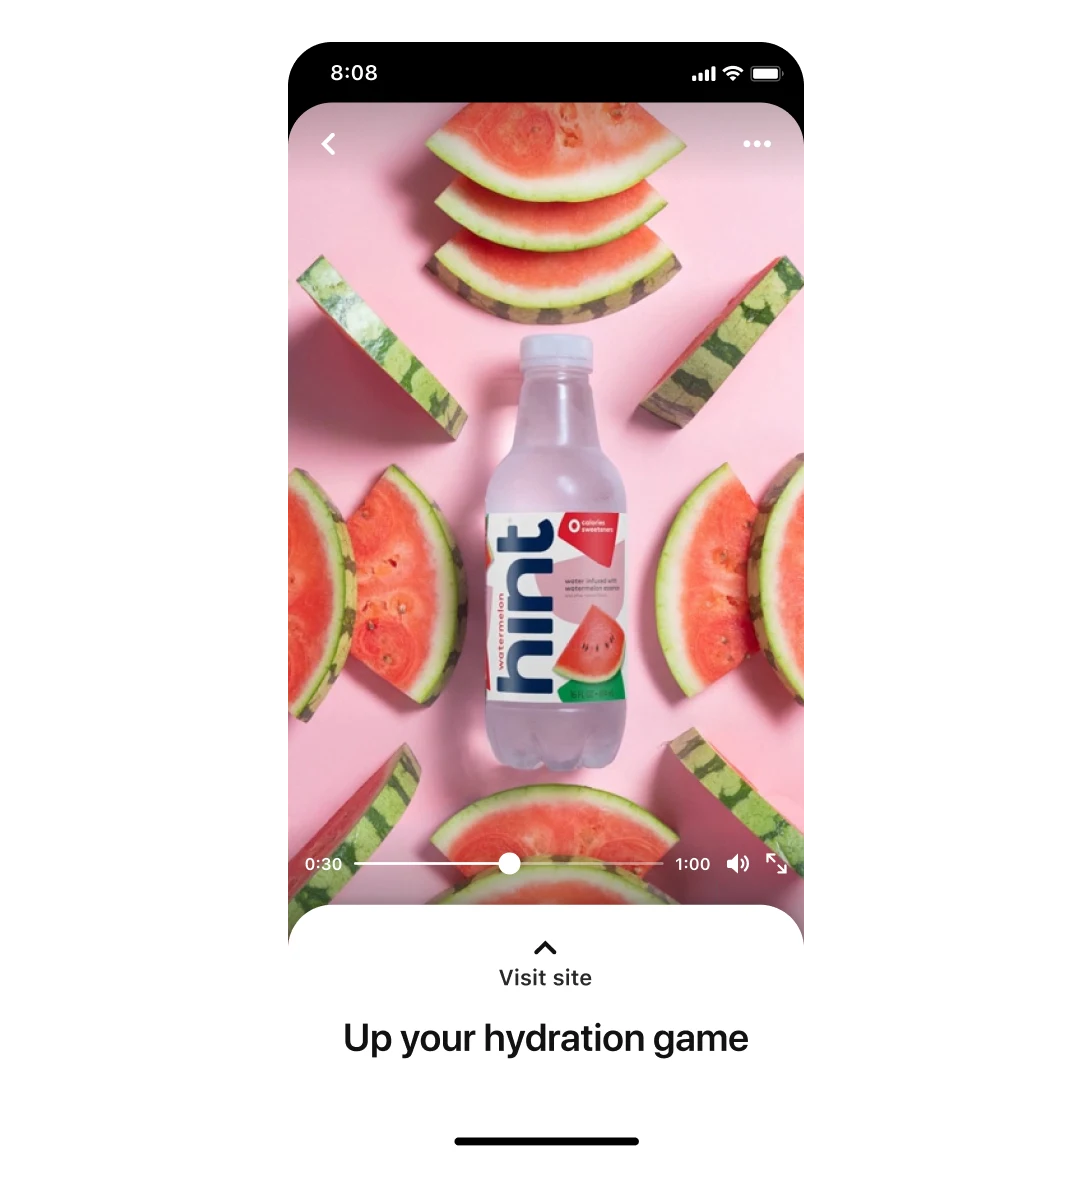 수박 조각에 둘러싸인 수박 맛 물 제품을 주인공으로 내세운 hint의 프리미어 스포트라이트 광고를 표시한 휴대전화 화면입니다. "수분 충전 업그레이드"라는 글귀가 있습니다.